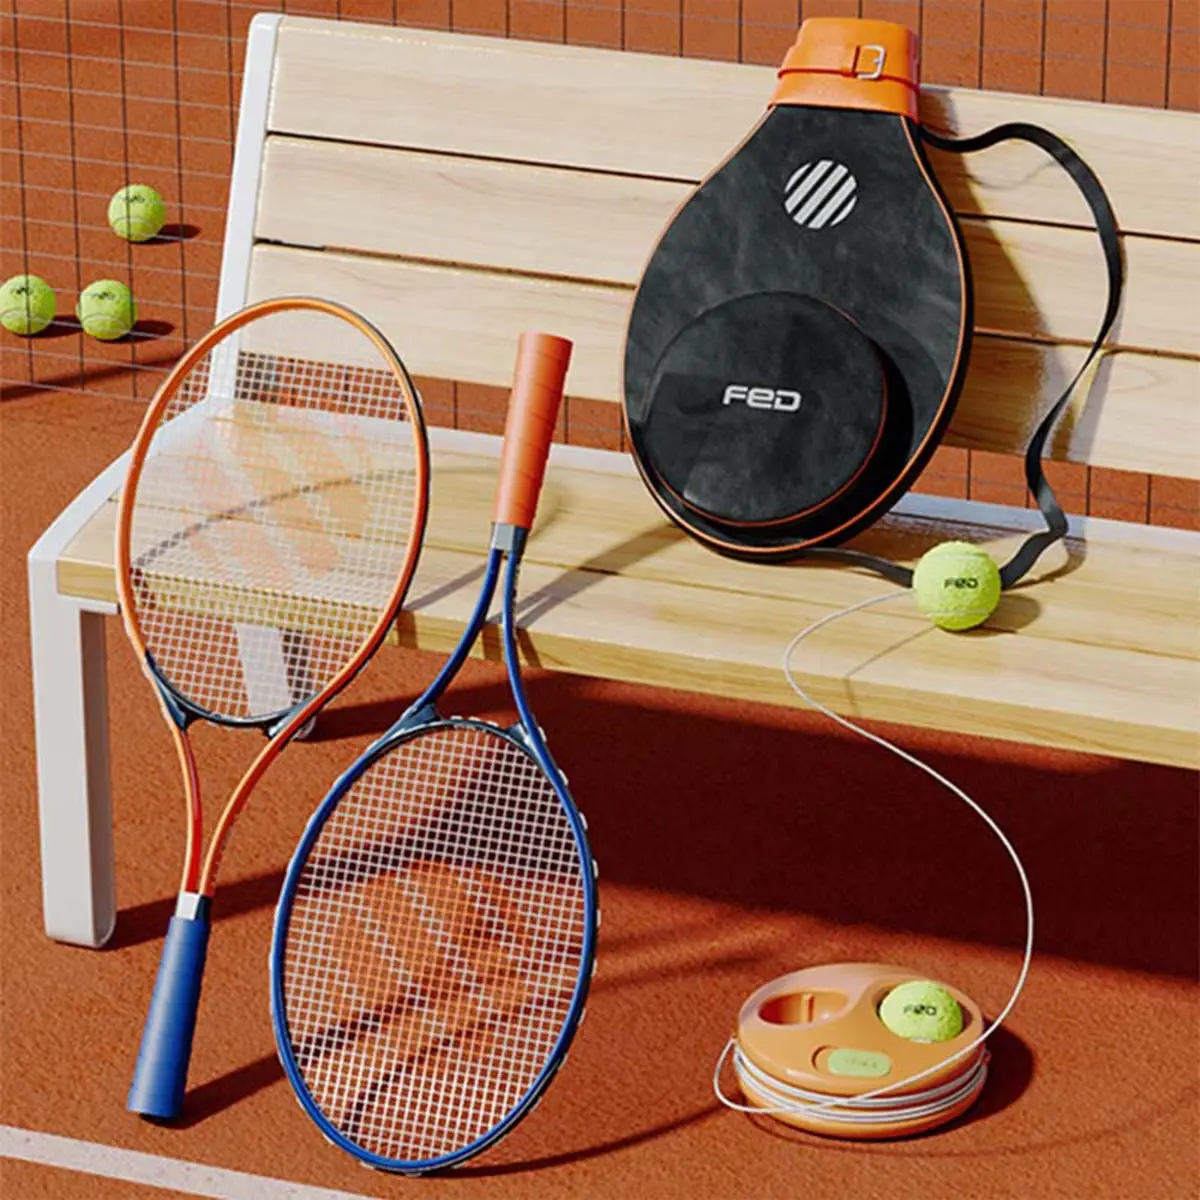 Mode Outdoor Sport Waren Anfänger Tennis schläger Set Mit Tennis trainer